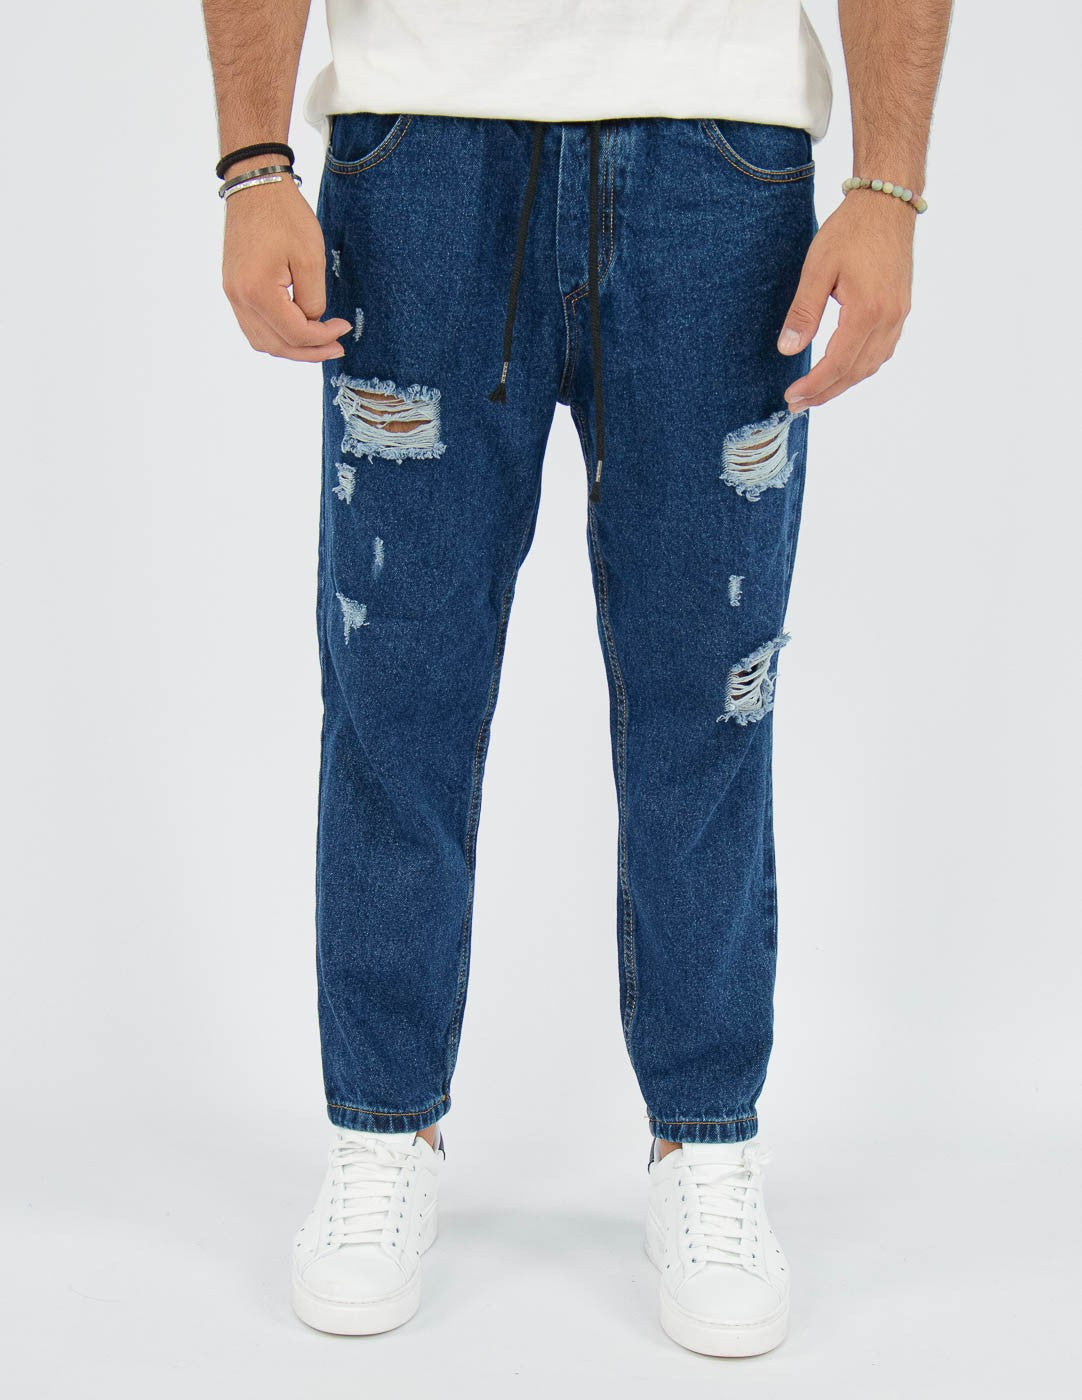 jeans uomo con elastico in vita e rotture